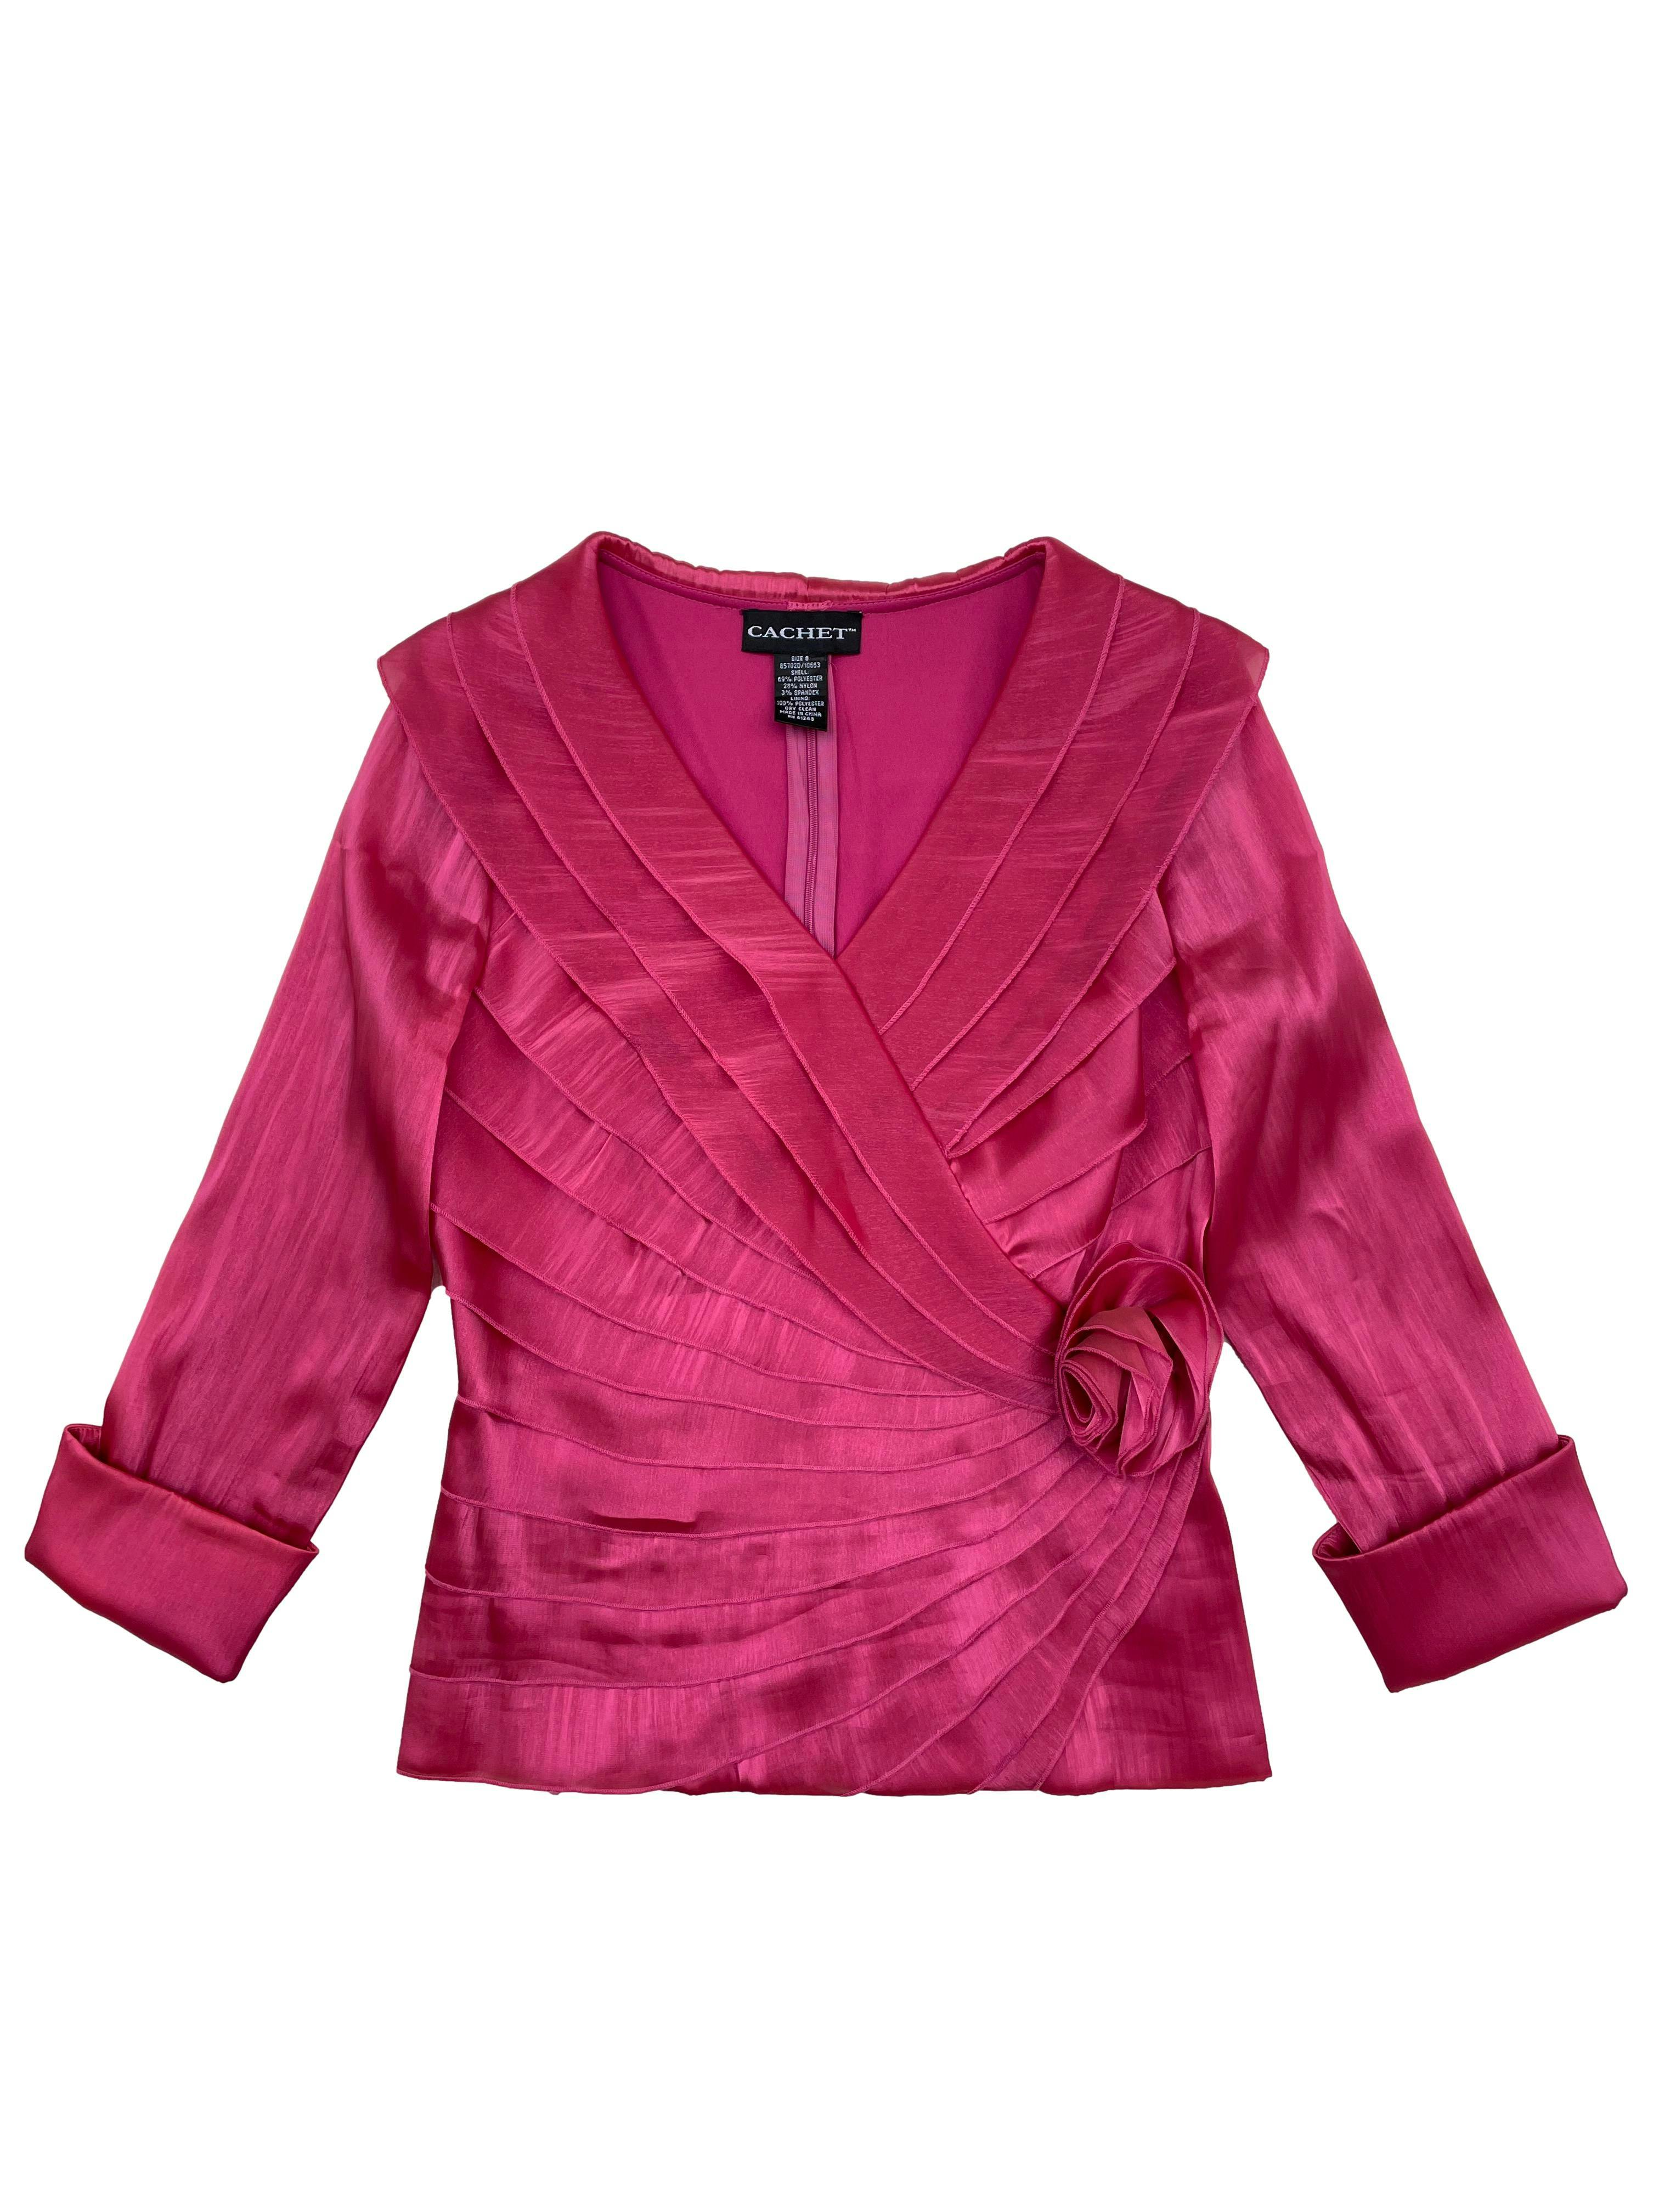 Blusa vintage Cachet de raso fucsia satinado, escote cruzado con rosa, forro y cierre posterior invisible. Busto 100cm, Largo 58cm